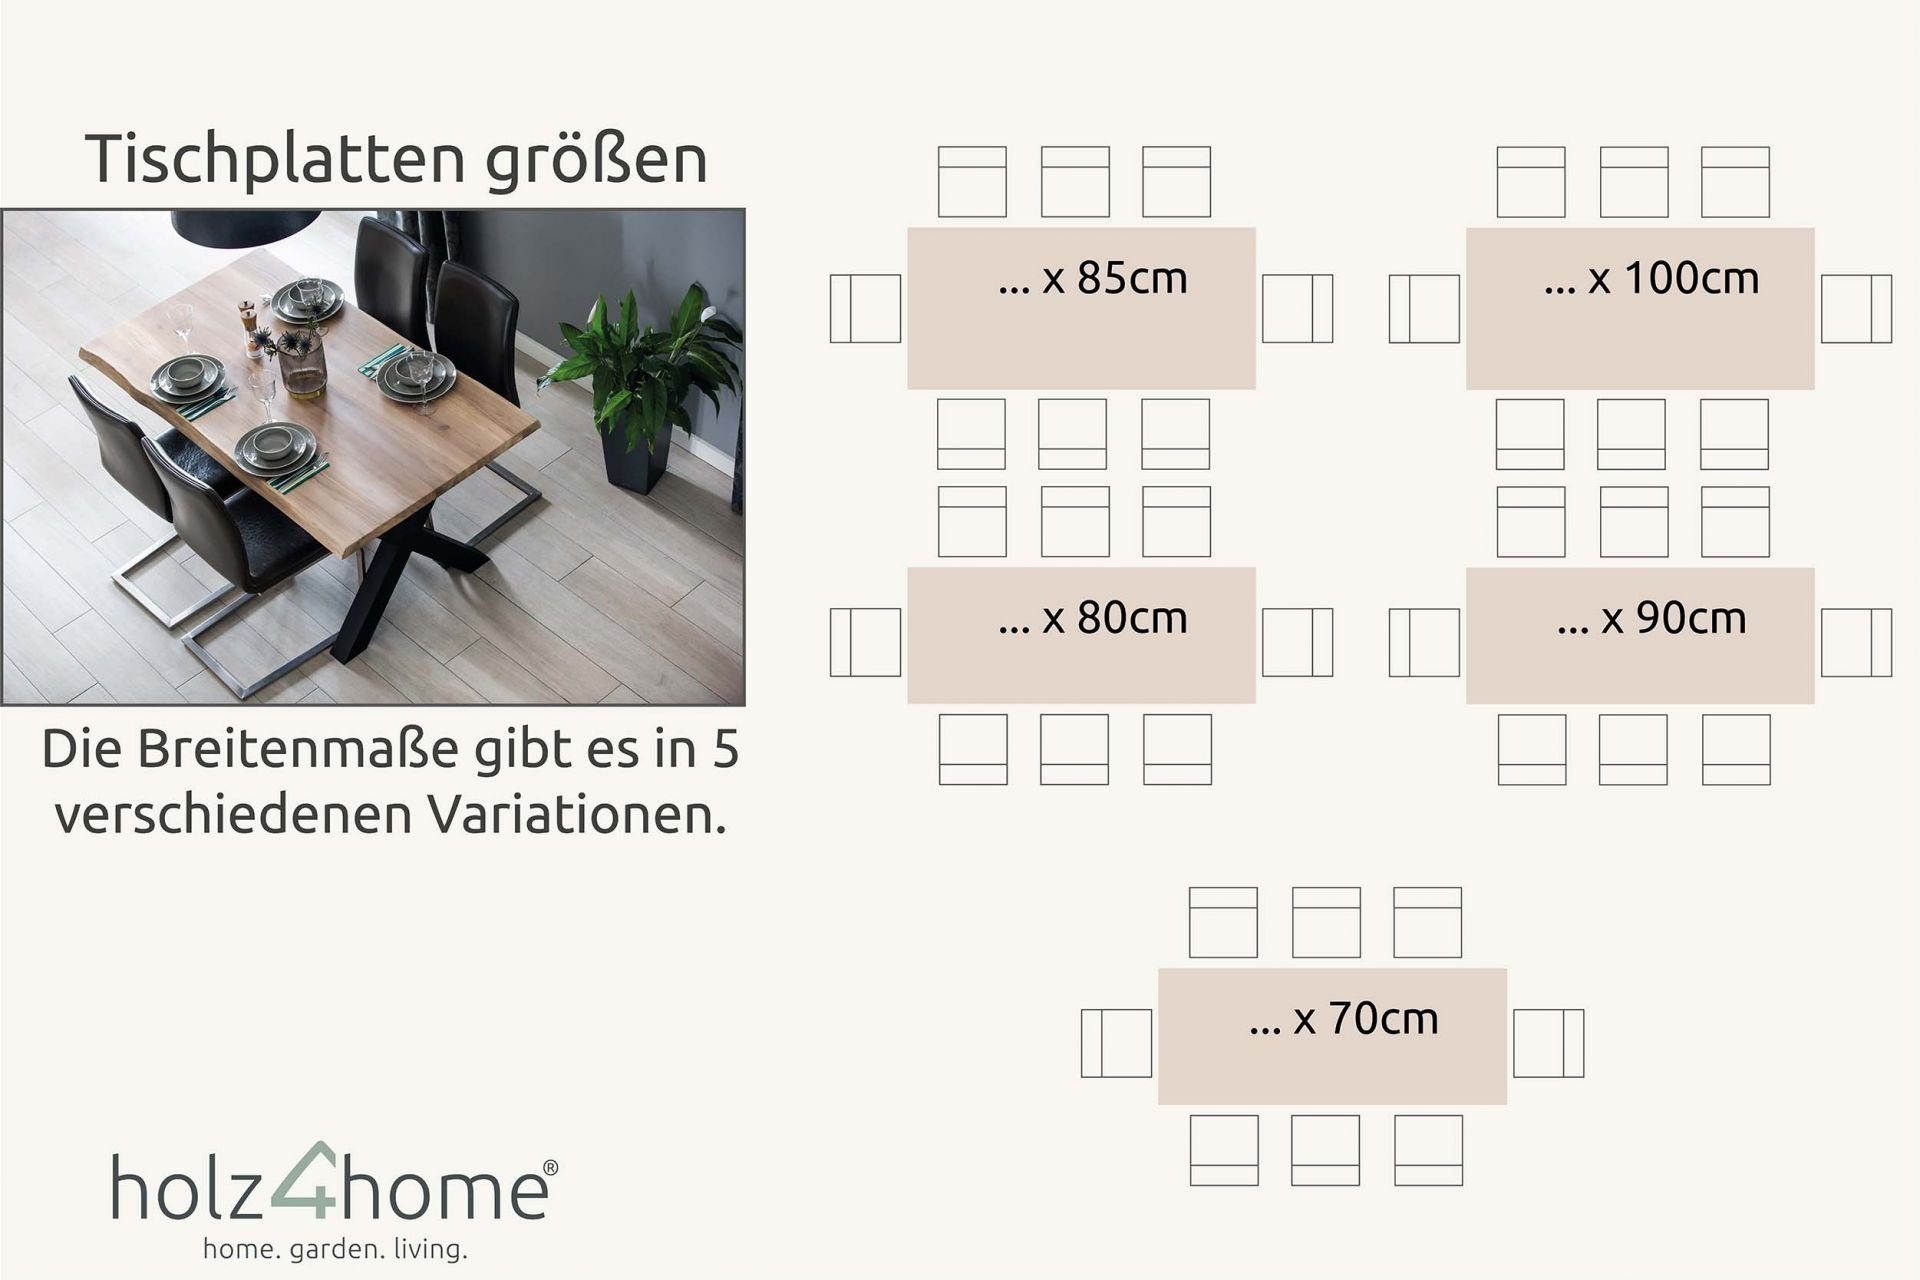 180x85 cm Tischplatte holz4home® aus holz4home mit Baumkante Eiche von Esstischplatte massiver